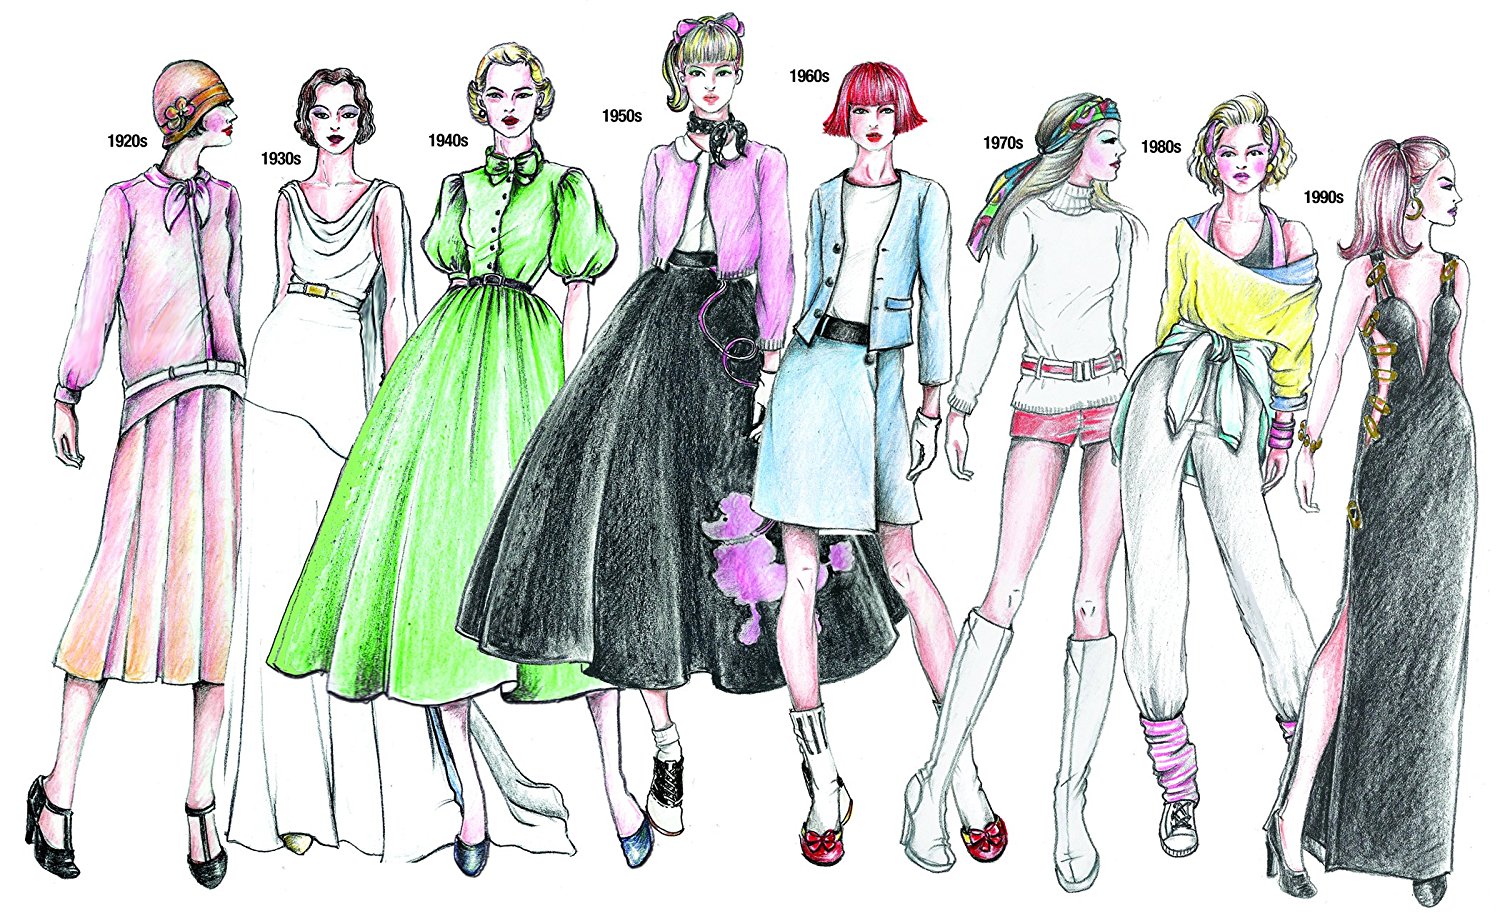 I Love Fashion Design Sketch Set - Fashion Angels : Target